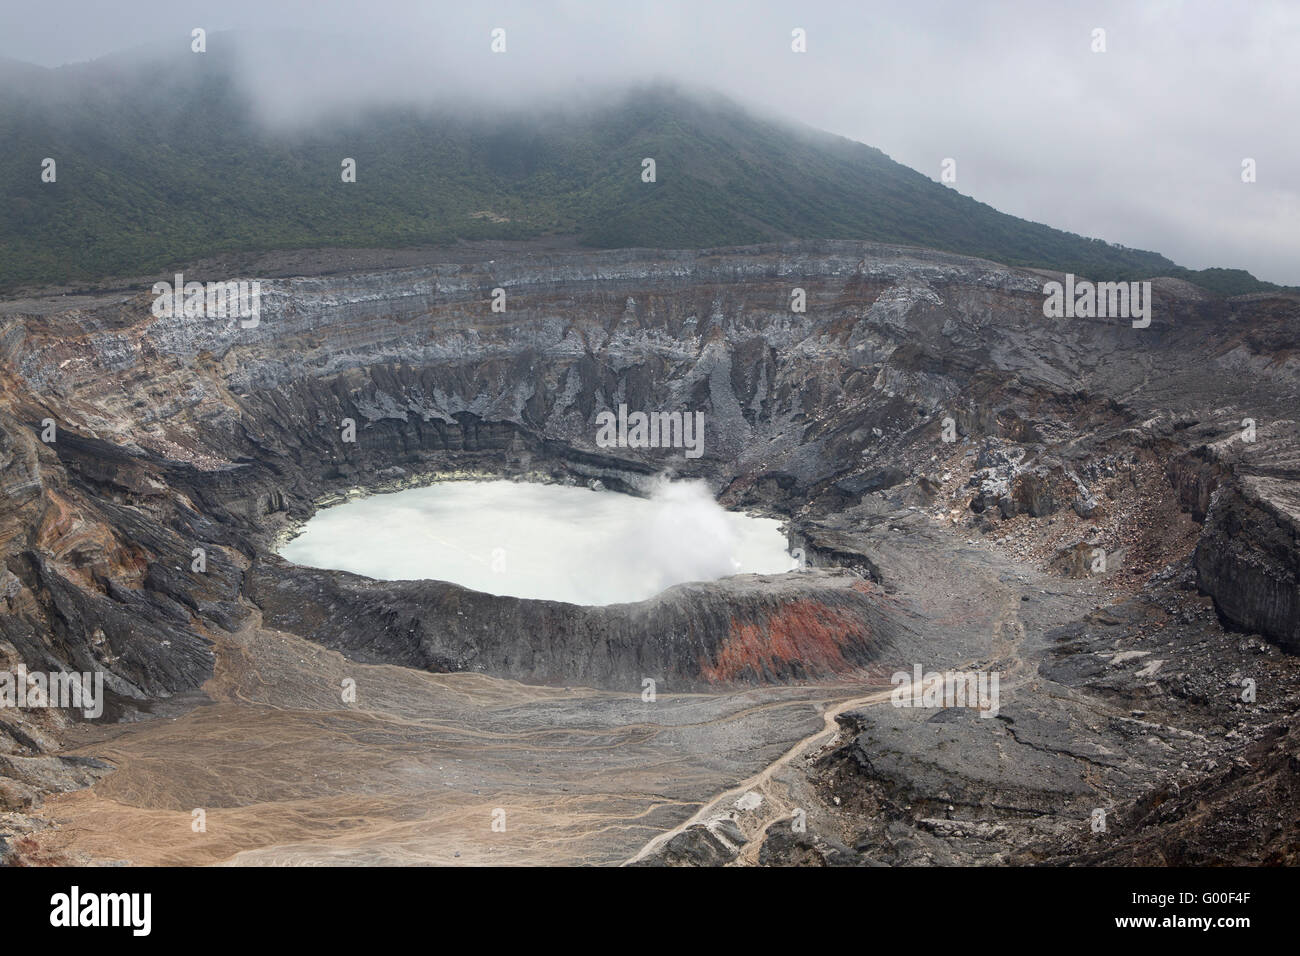 Il cratere del Vulcano Poas nel Parque Nacional Volcan Poas (Parco Nazionale del Vulcano Poas) in Costa Rica. Foto Stock